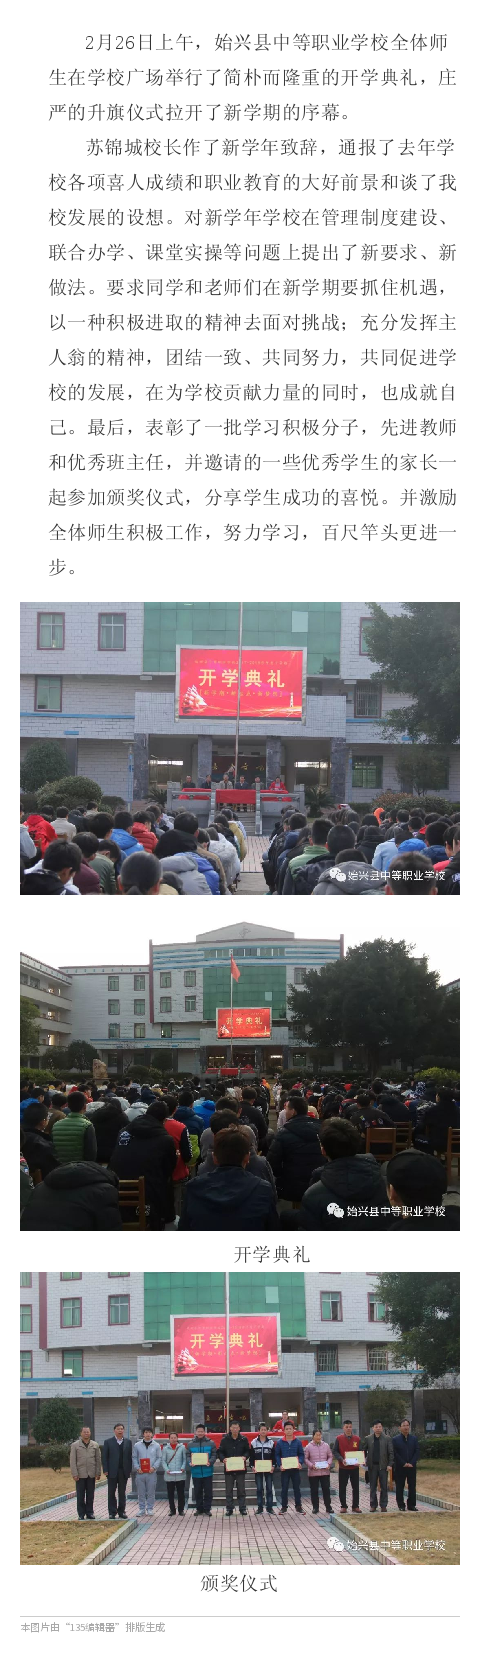 始兴县中等职业学校举行2018年春季开学典礼